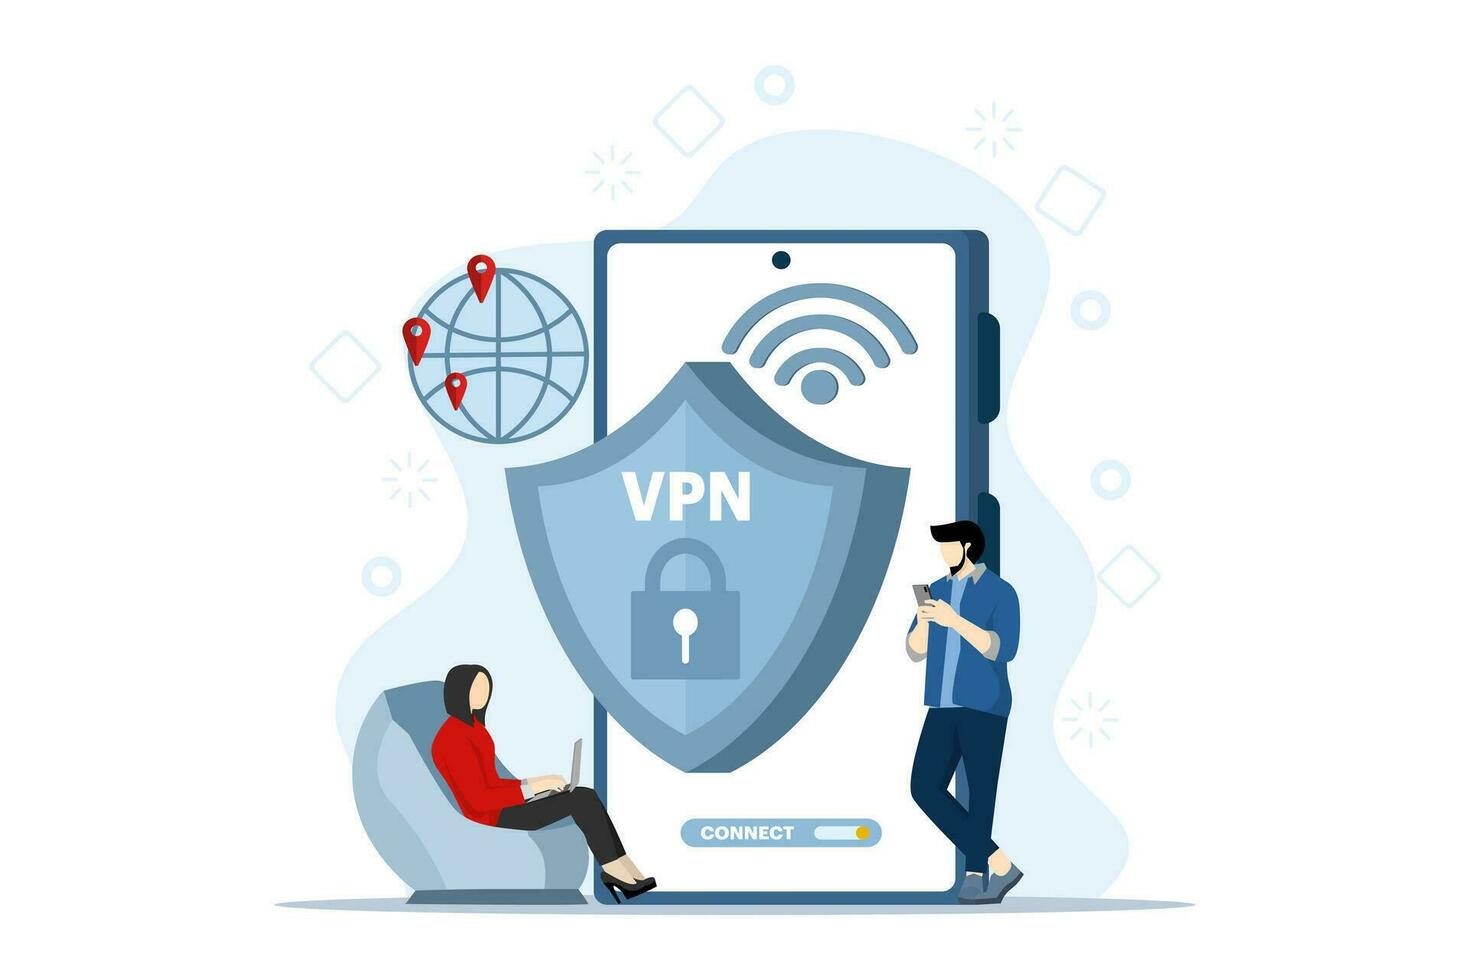 virtuell Privat Netzwerk Konzept. Menschen verwenden vpn Technologie System zu schützen ihr persönlich Daten auf Smartphones, vpn Technologie System, Browser entsperren Webseiten, Internet Verbindung. vektor